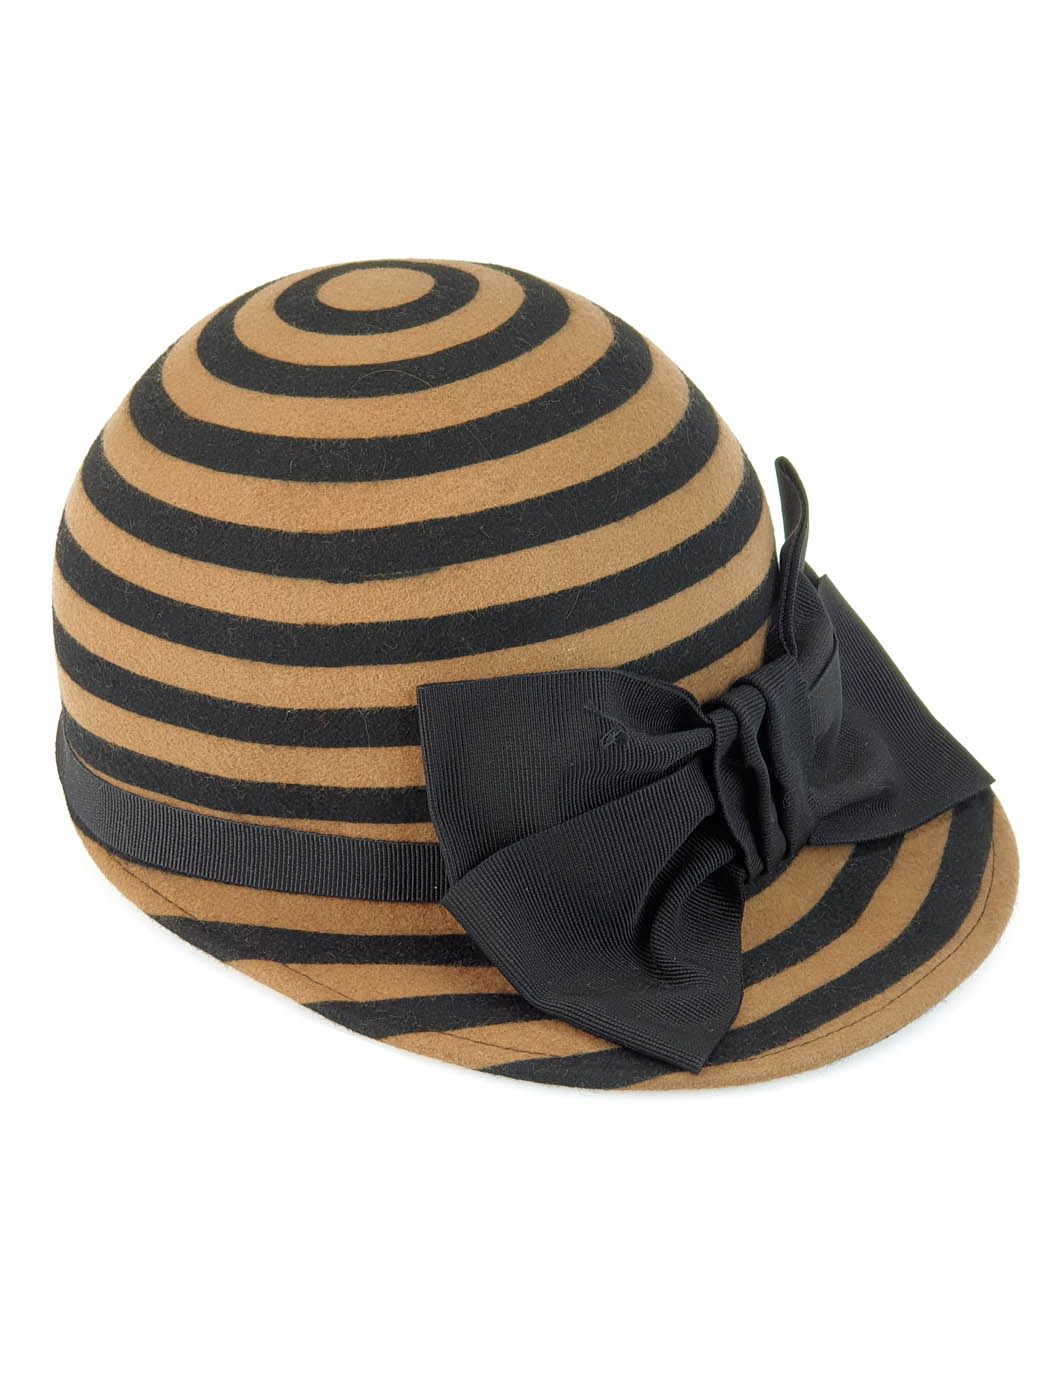 Μάλλινο καπέλο τζόκευ με ρίγες για κορίτσια - W339